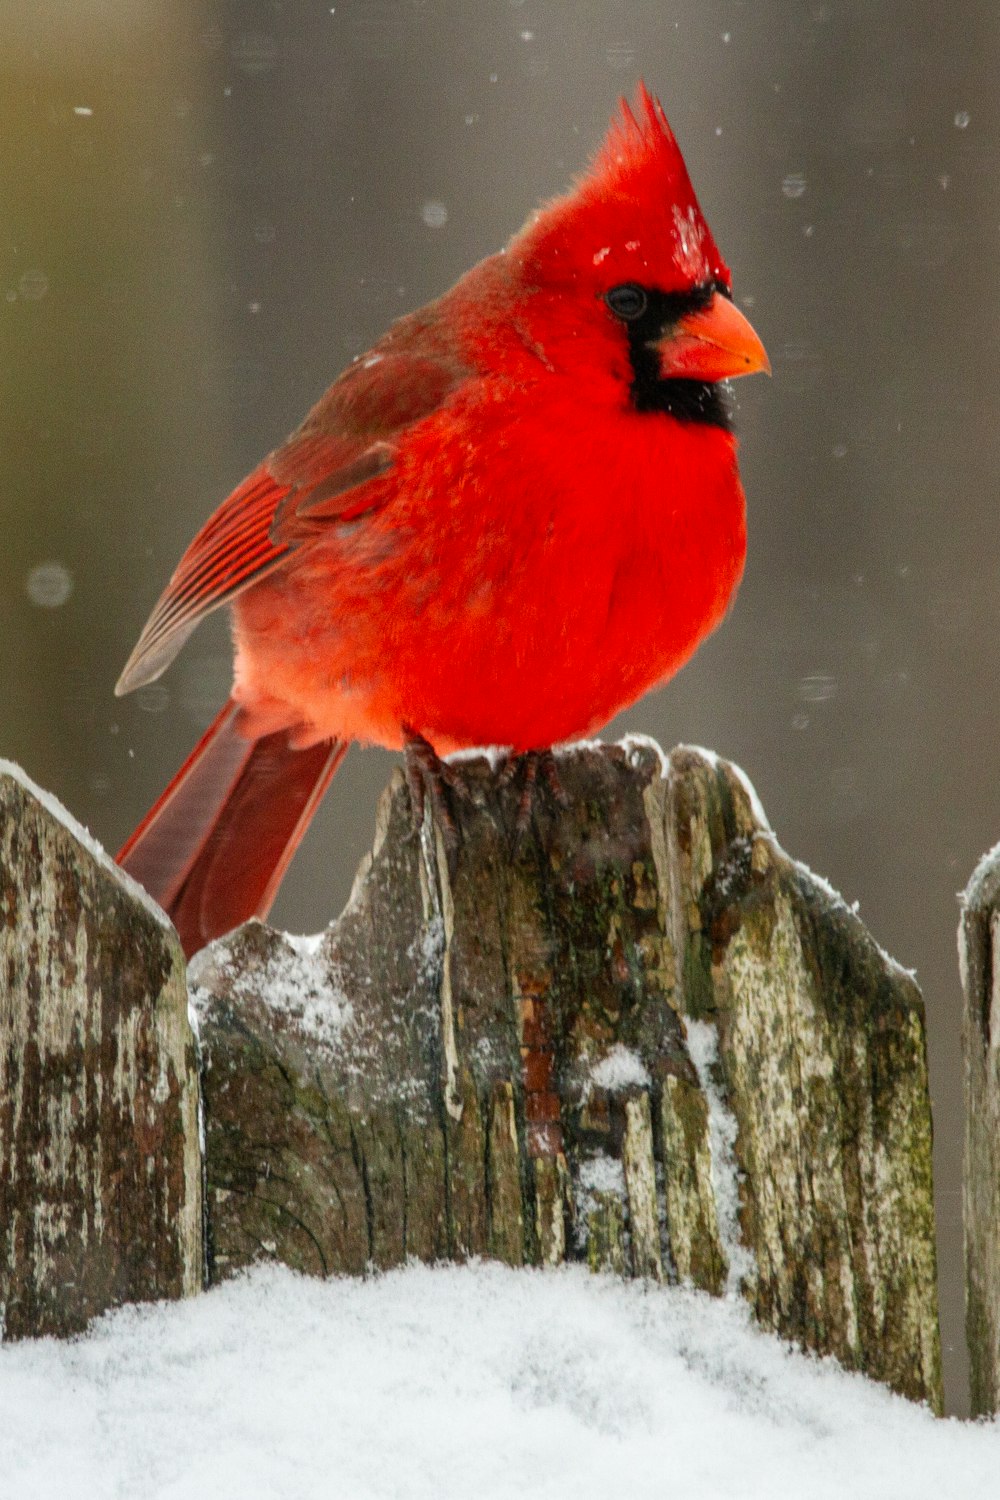 red cardinal bird on gray wood log